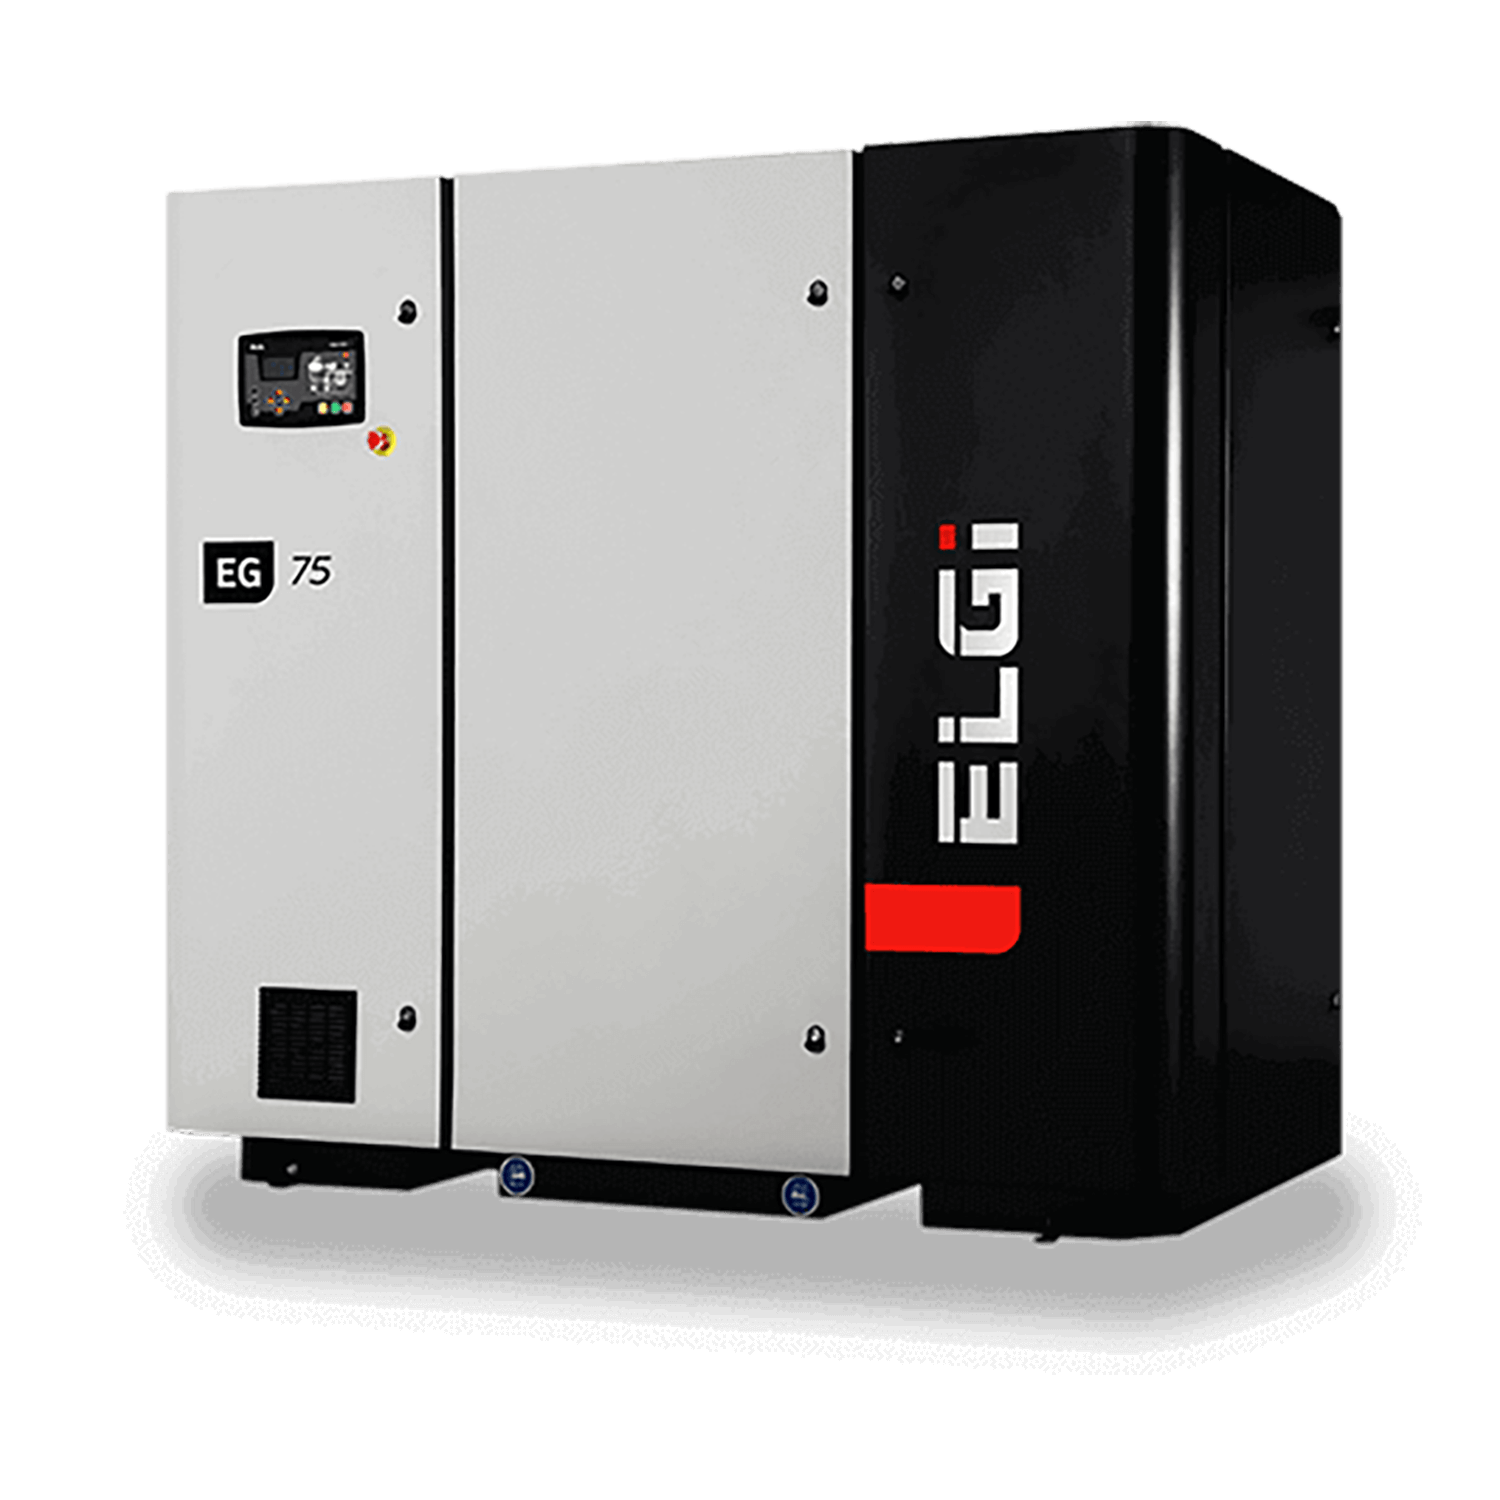 ELGi-EN-Series-Electric-lubricated-screw-compressors-15-300hp-energy-efficient